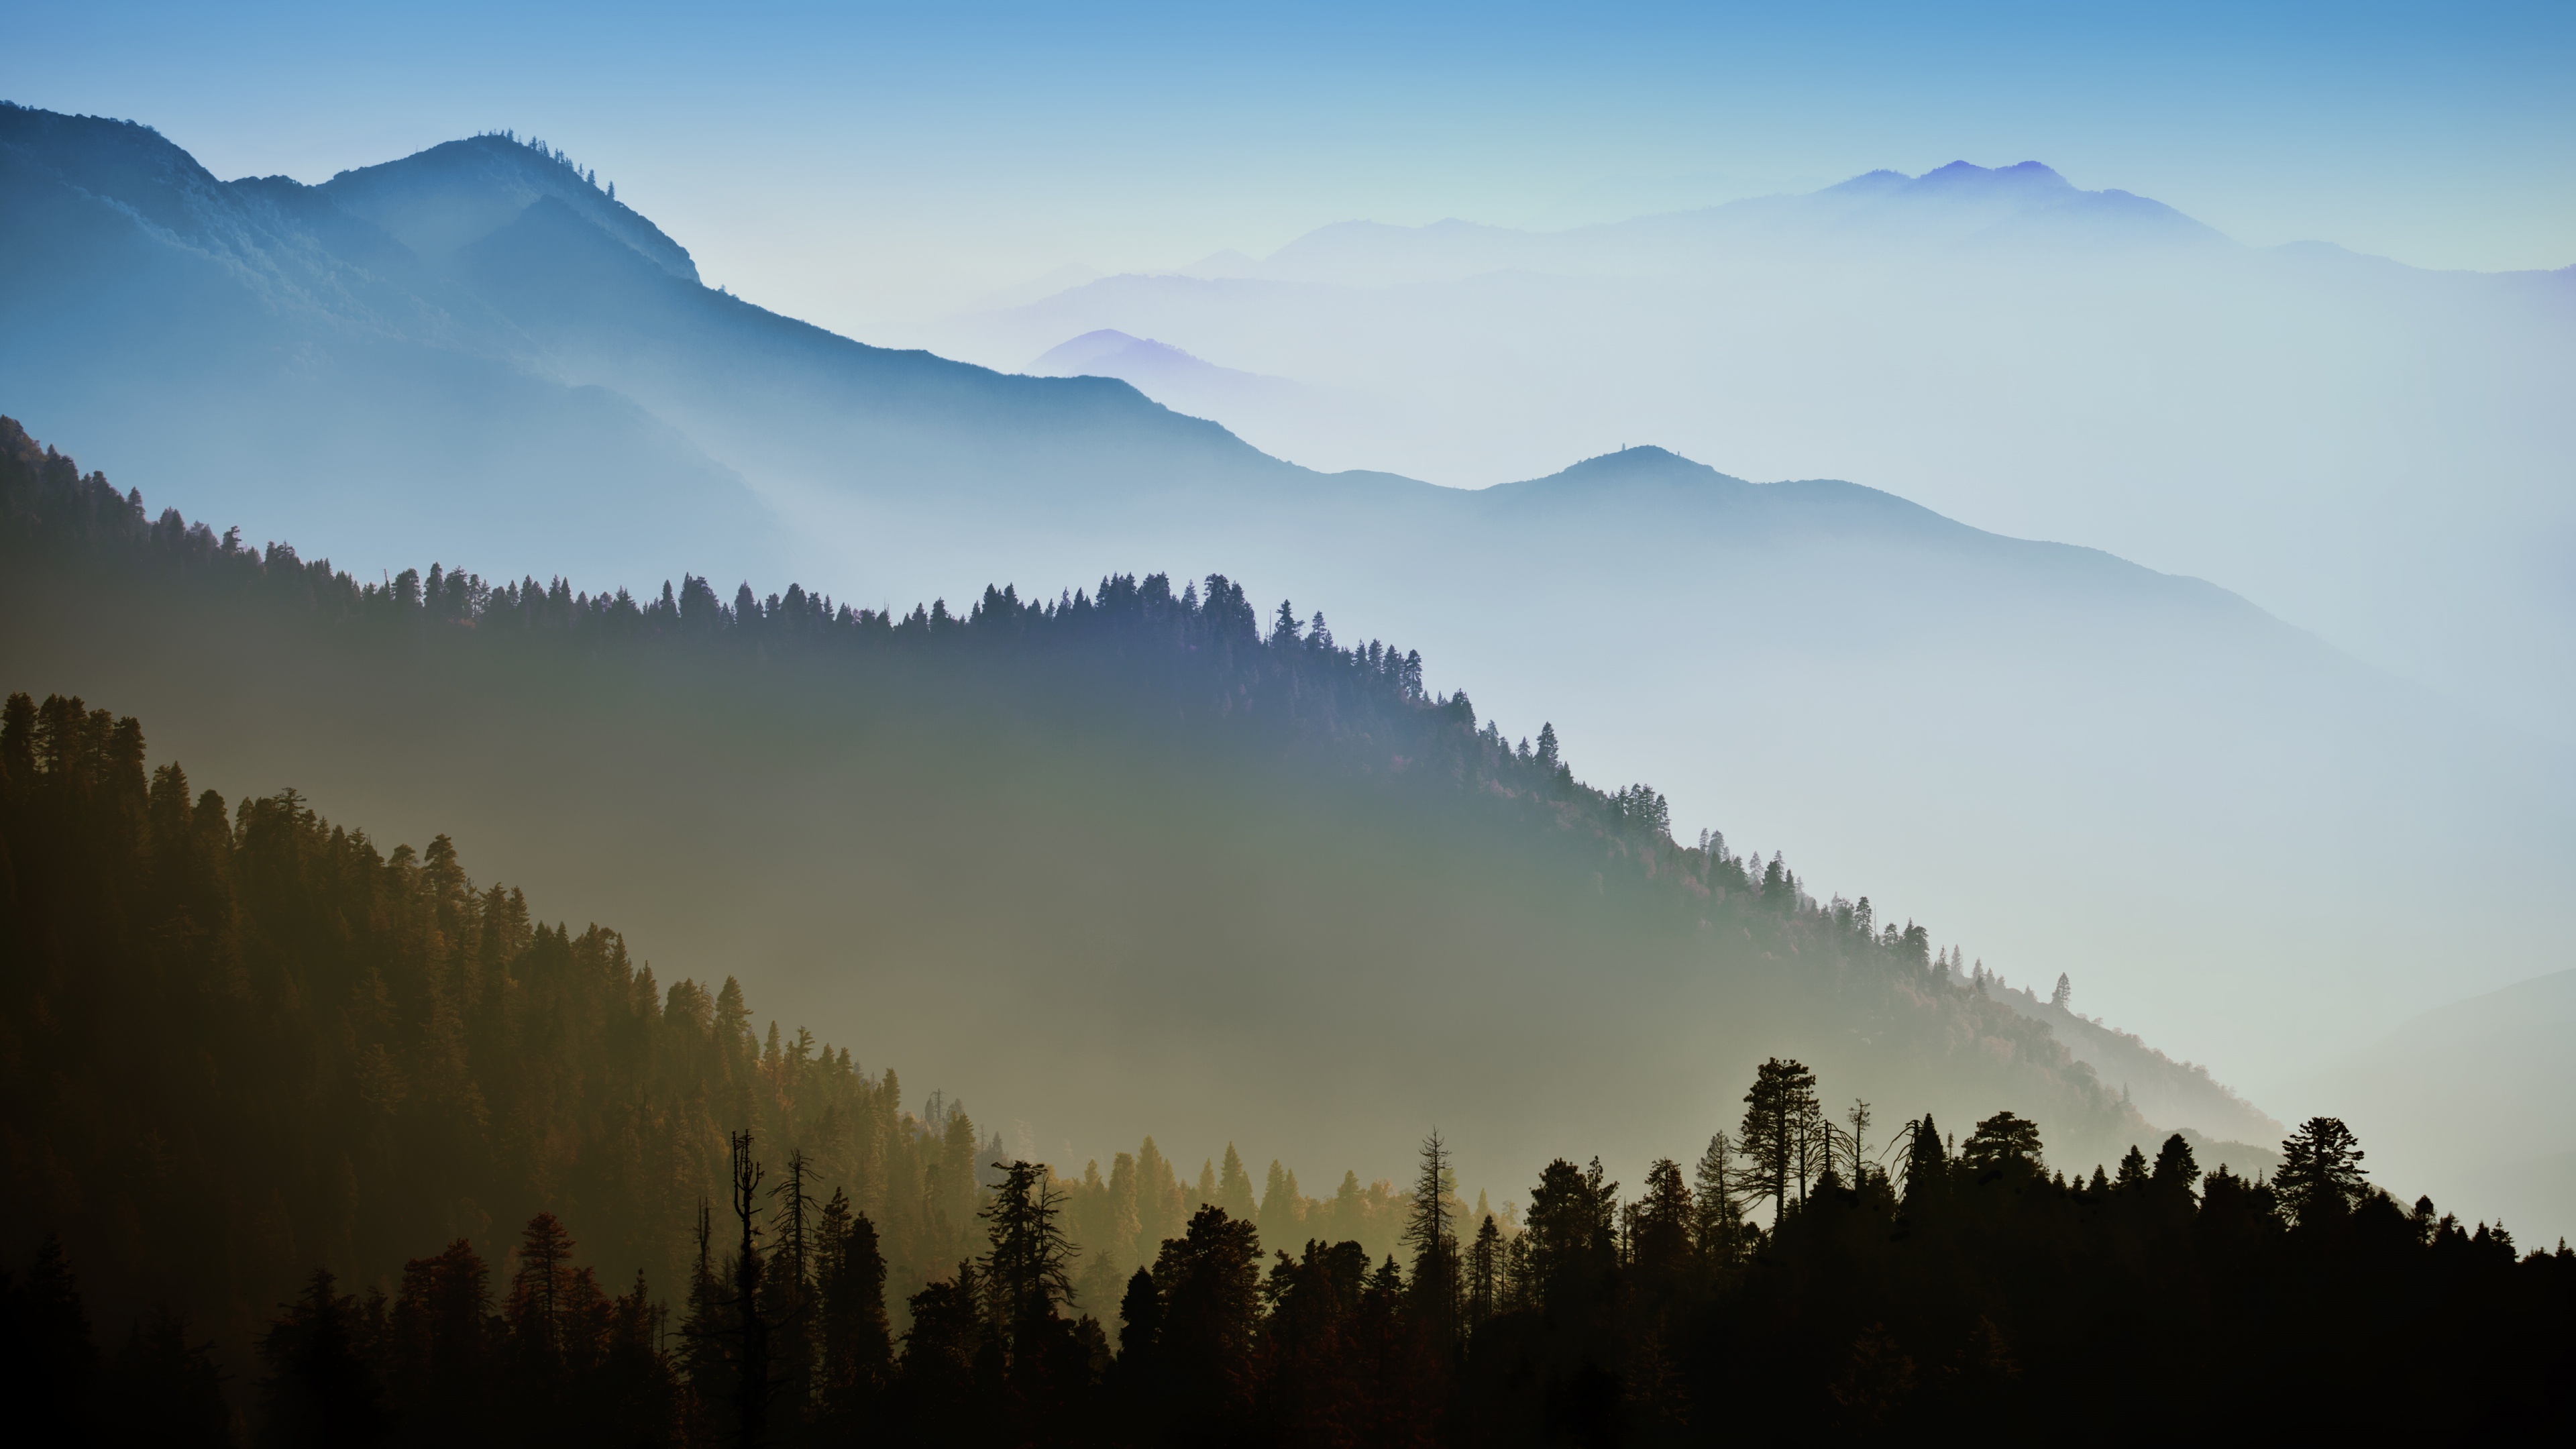 Hình nền Mac OS X 4K với các hình ảnh núi non, rừng và thiên nhiên sẽ là điều hoàn toàn phù hợp để tạo cảm giác bình yên trong khi làm việc. Hãy xem ảnh liên quan và cập nhật cho Mac của bạn ngay bây giờ.